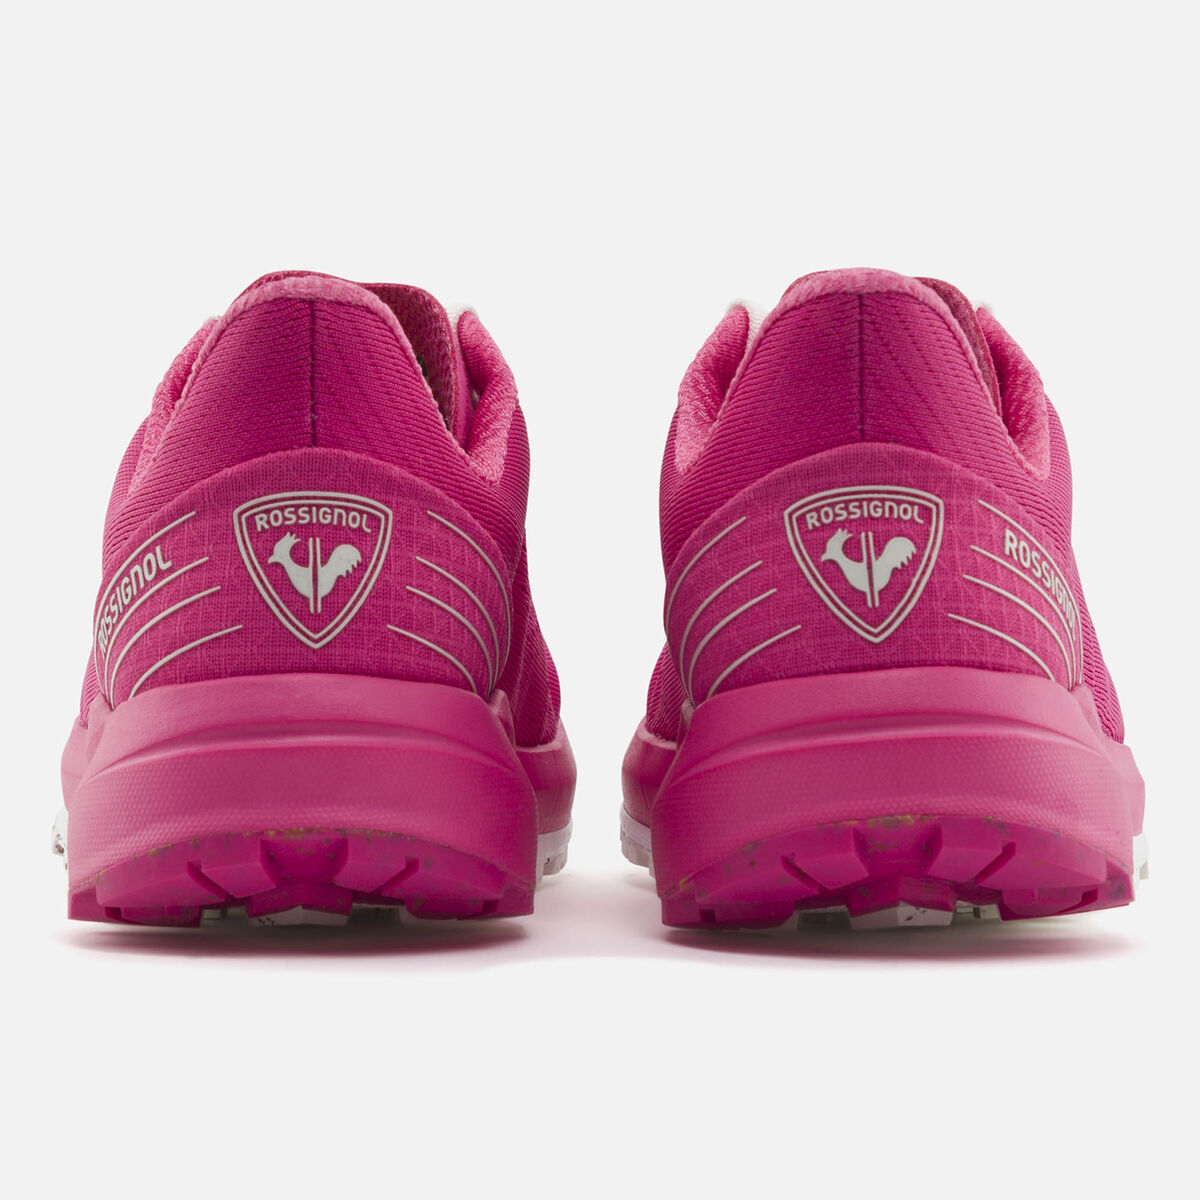 Rossignol Women's SKPR 2.0 Active Shoes Pink/Purple